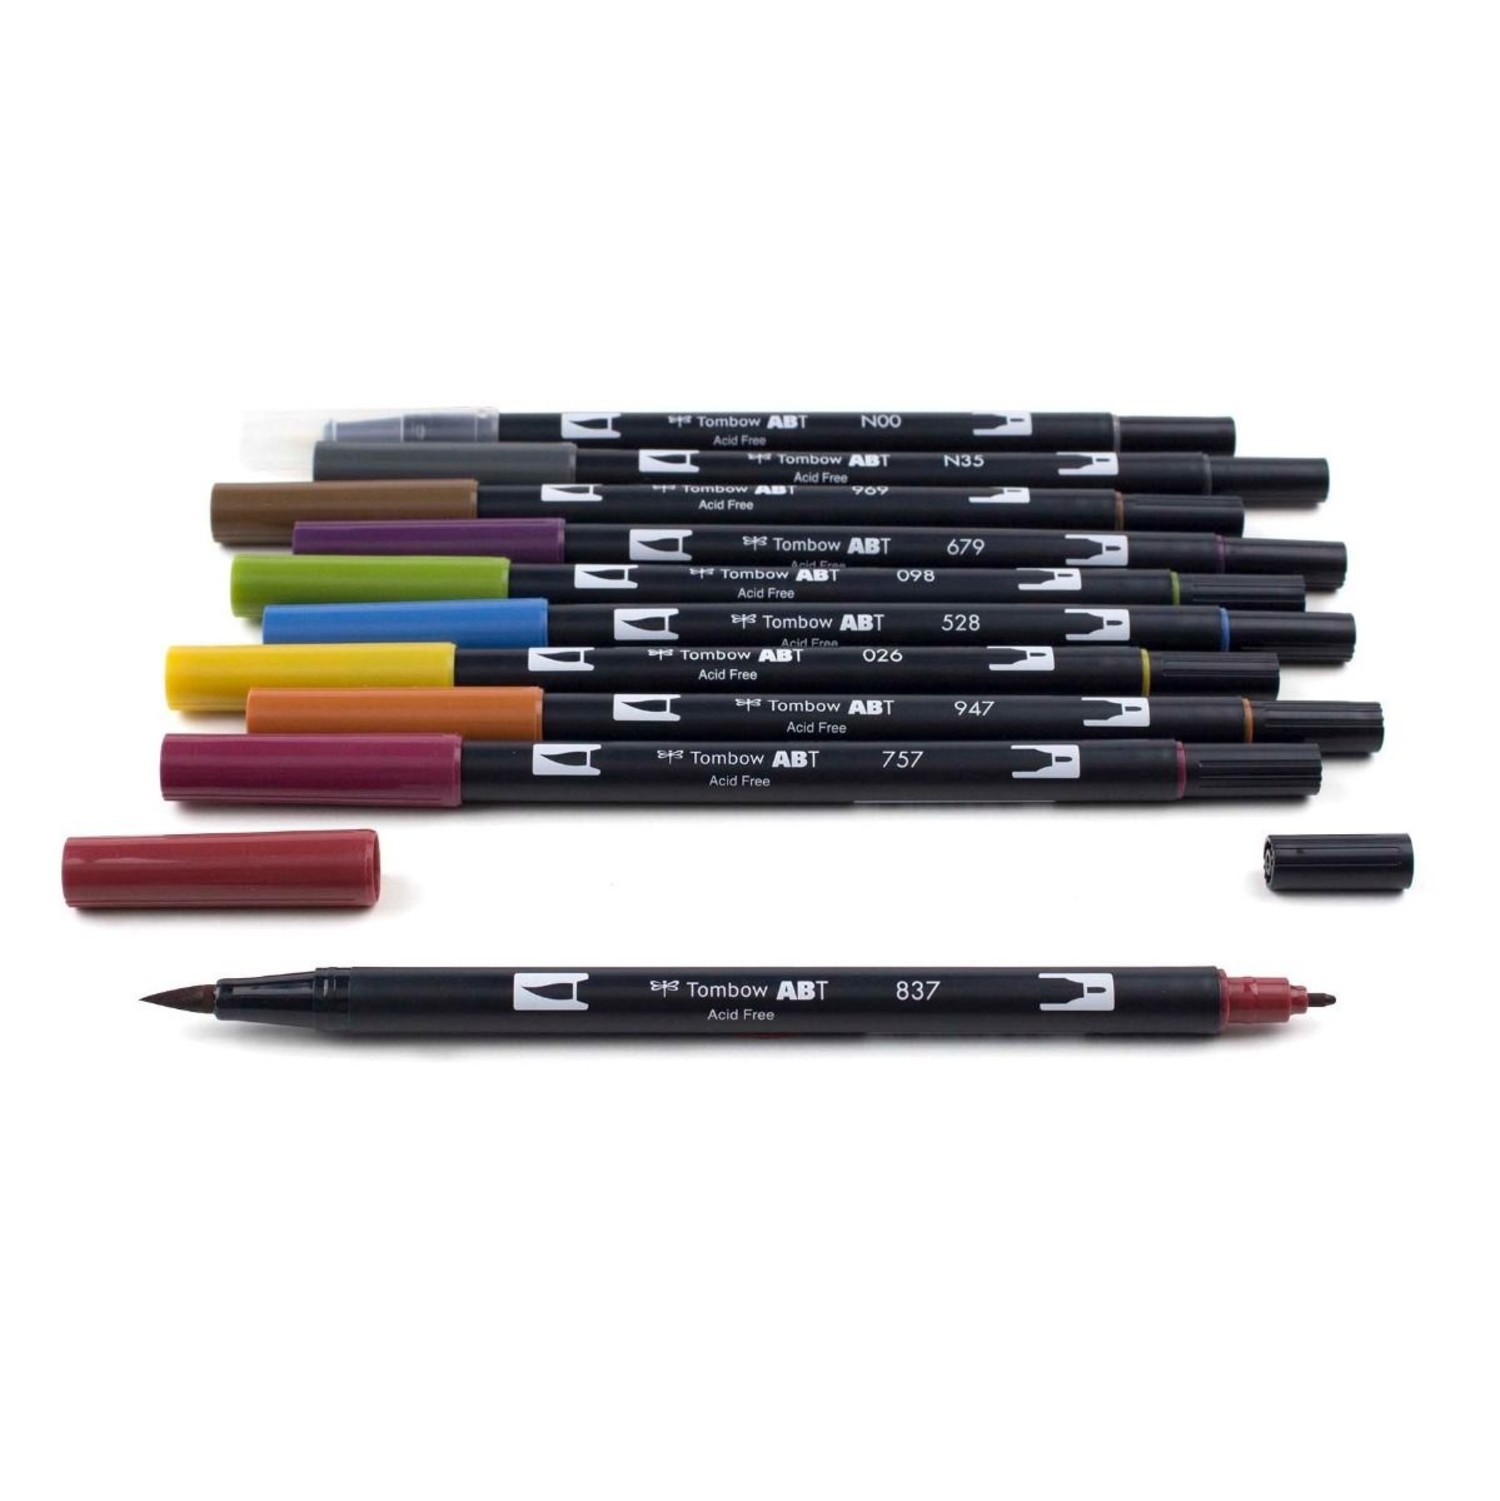 https://cdn.shoplightspeed.com/shops/635248/files/35211193/1500x4000x3/tombow-dual-brush-pen-art-markers-muted-10-pack.jpg